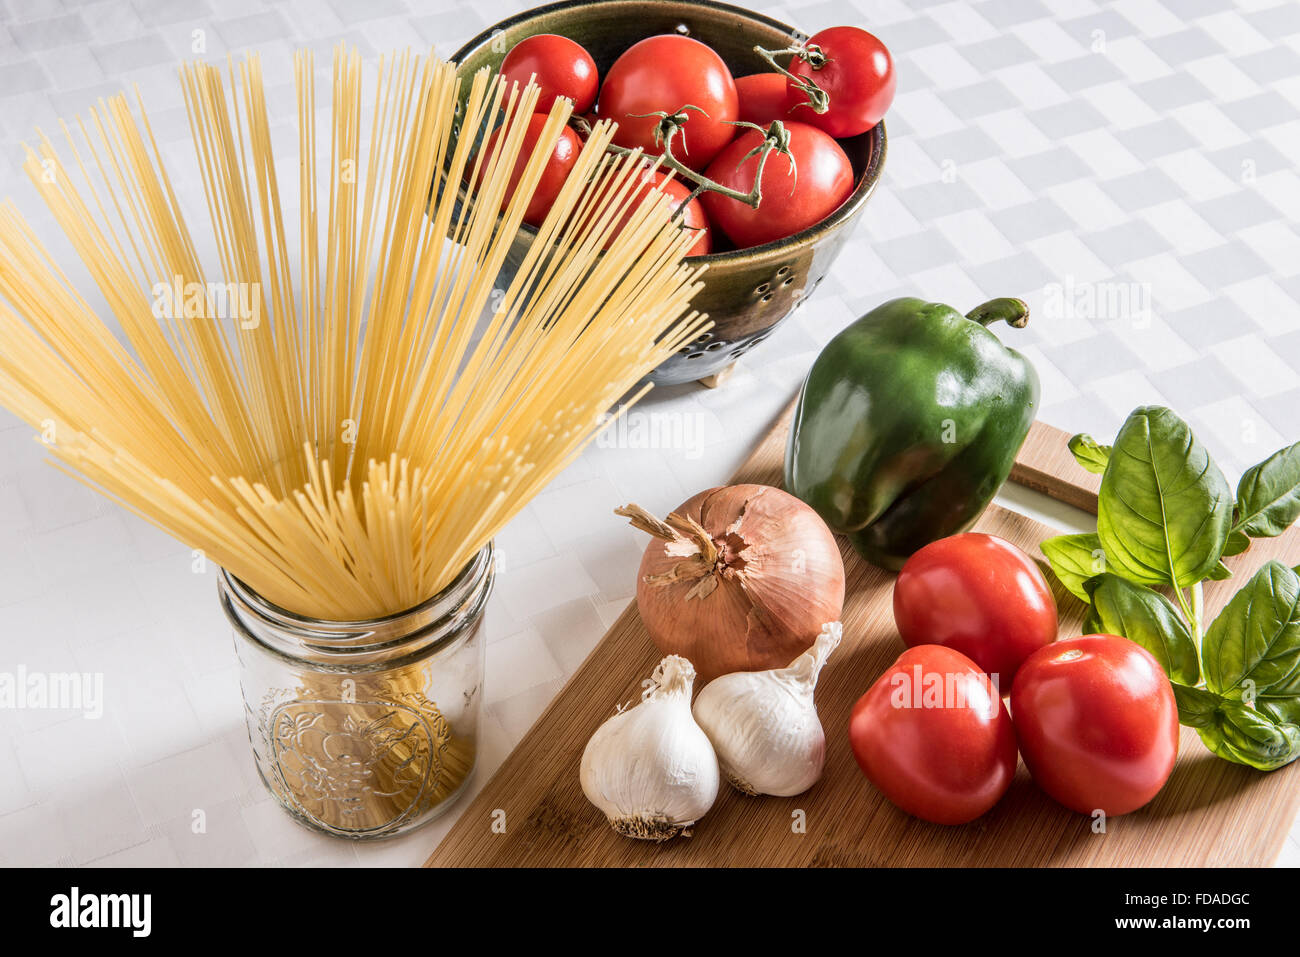 Ingredienti italiani freschi esposti su un tagliere di legno con pasta di capelli d'angelo essiccata e un colino di ceramica di pomodori maturi su un panno bianco. Foto Stock